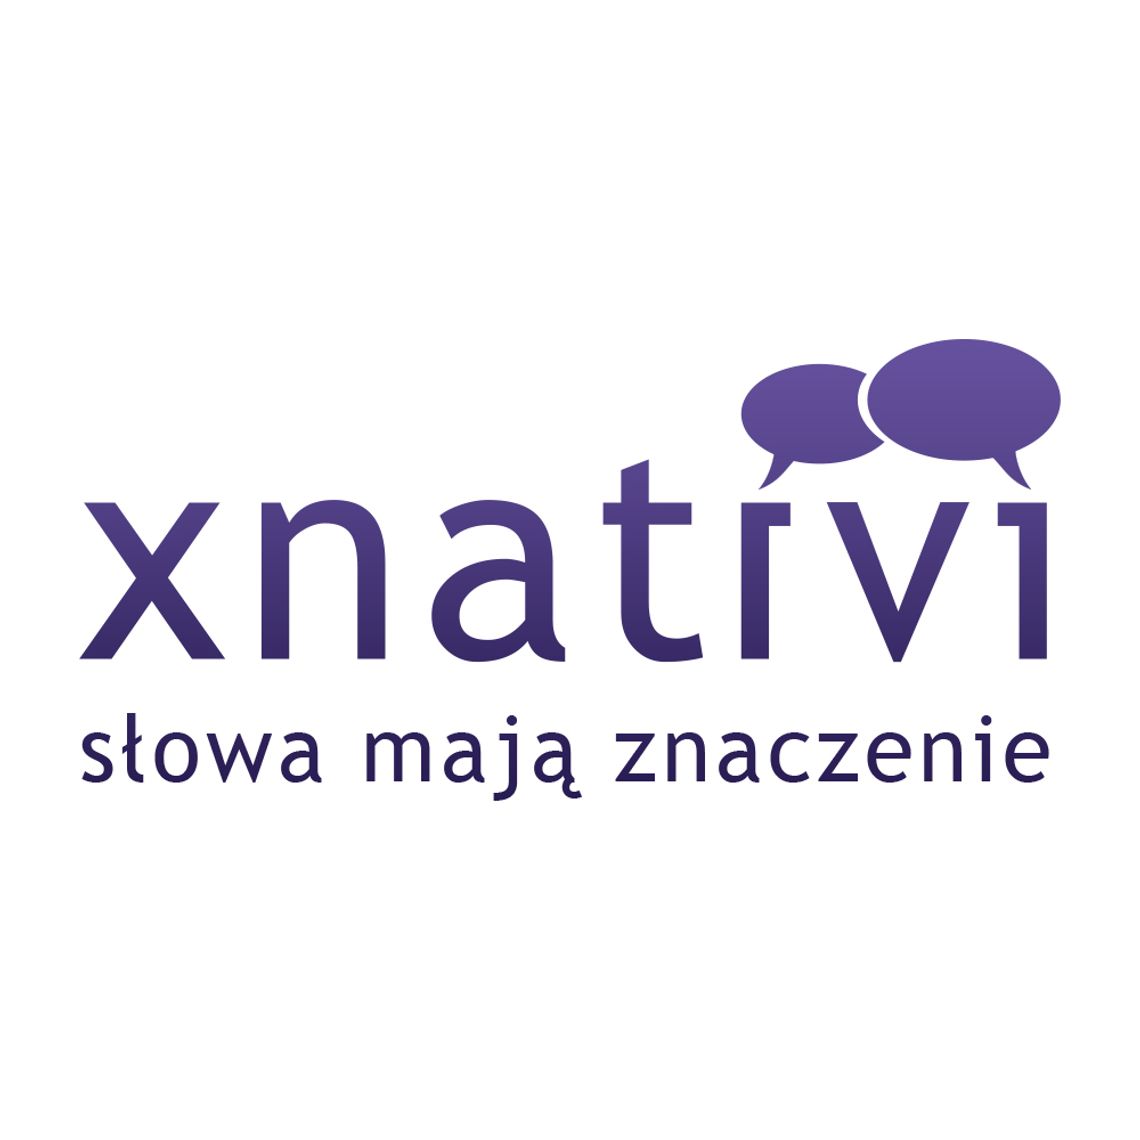 Biuro tłumaczeń xnativi - Tłumaczenia online na zlecenie